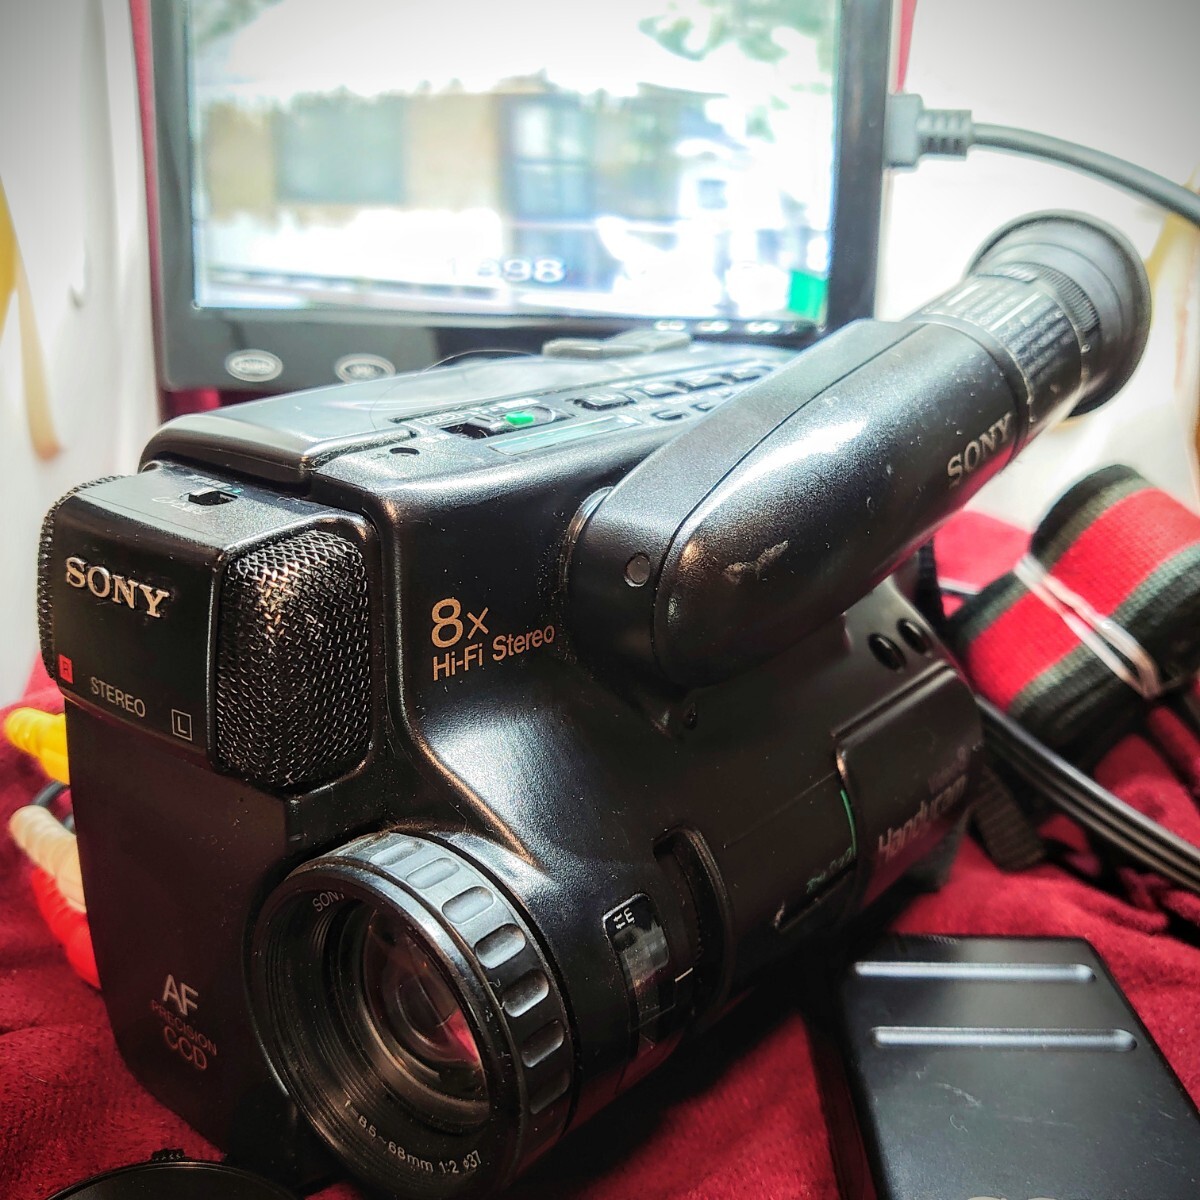 335【Video8テープ/再生/外部出力OK】SONY ビデオカメラ Handycam CCD-TR75 ソニー 本体 ACバッテリー充電器 他 箱付き ダビング等に_画像1